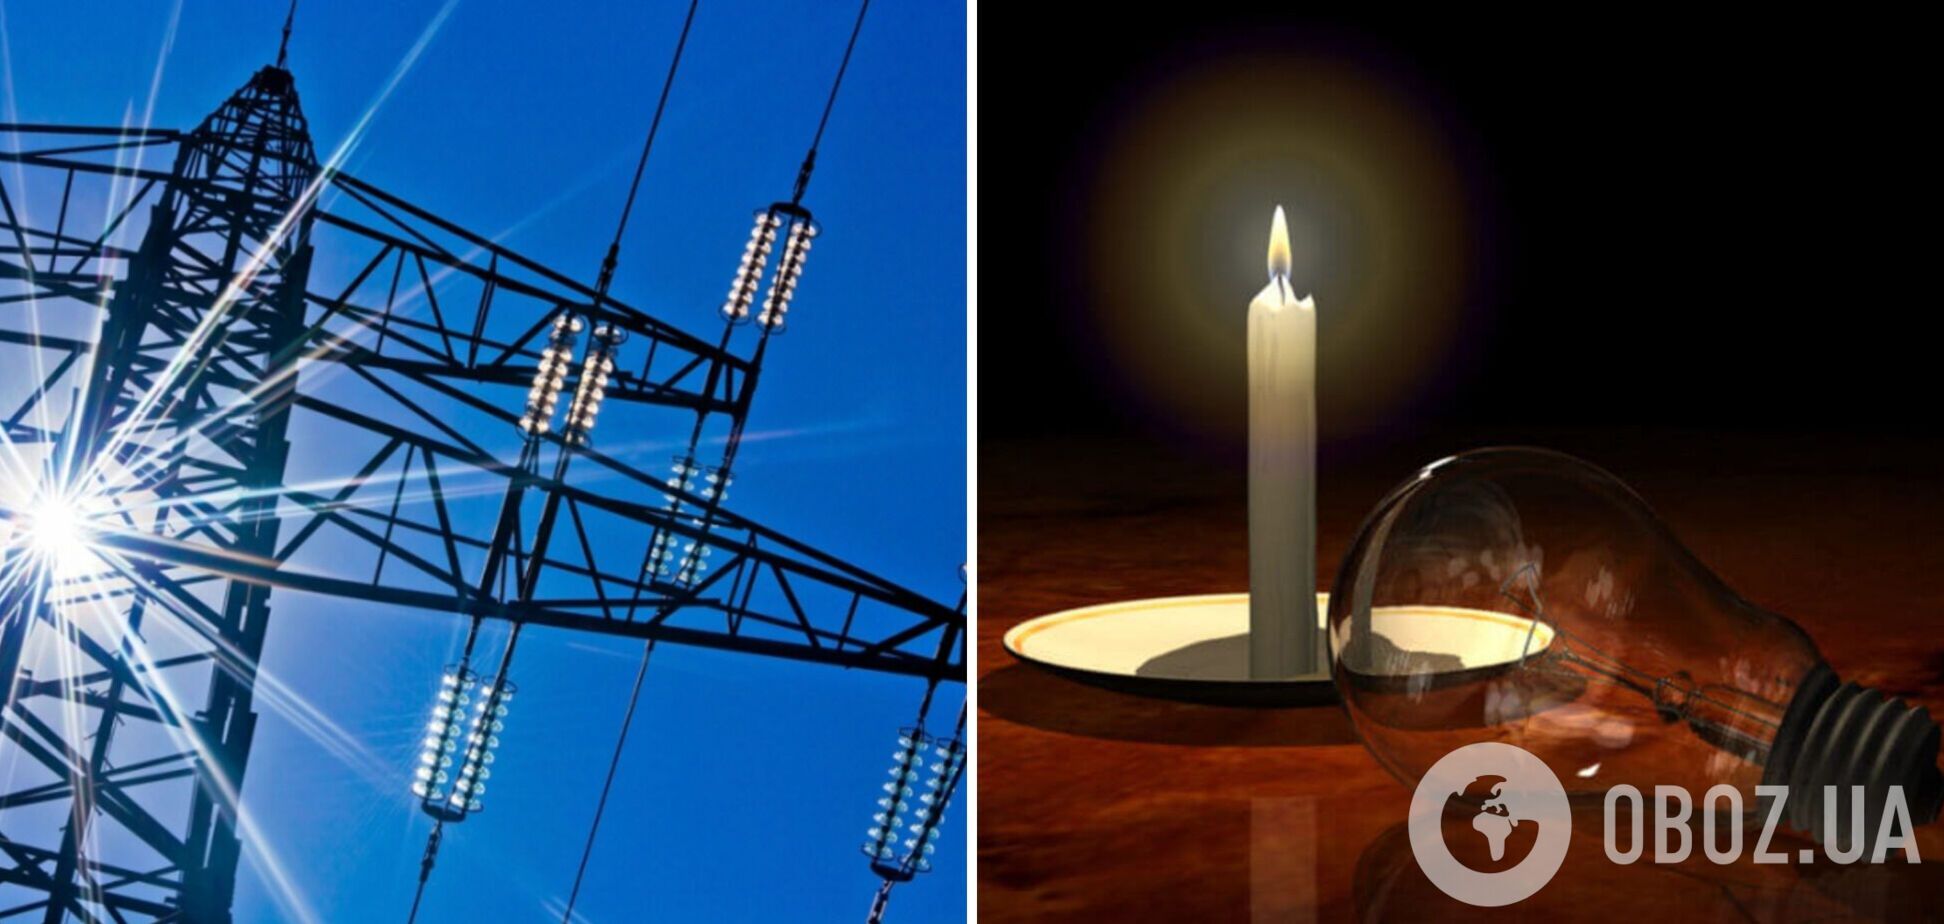 Відключення електроенергії відбуваються через ремонти перевантажених мереж, – експерт